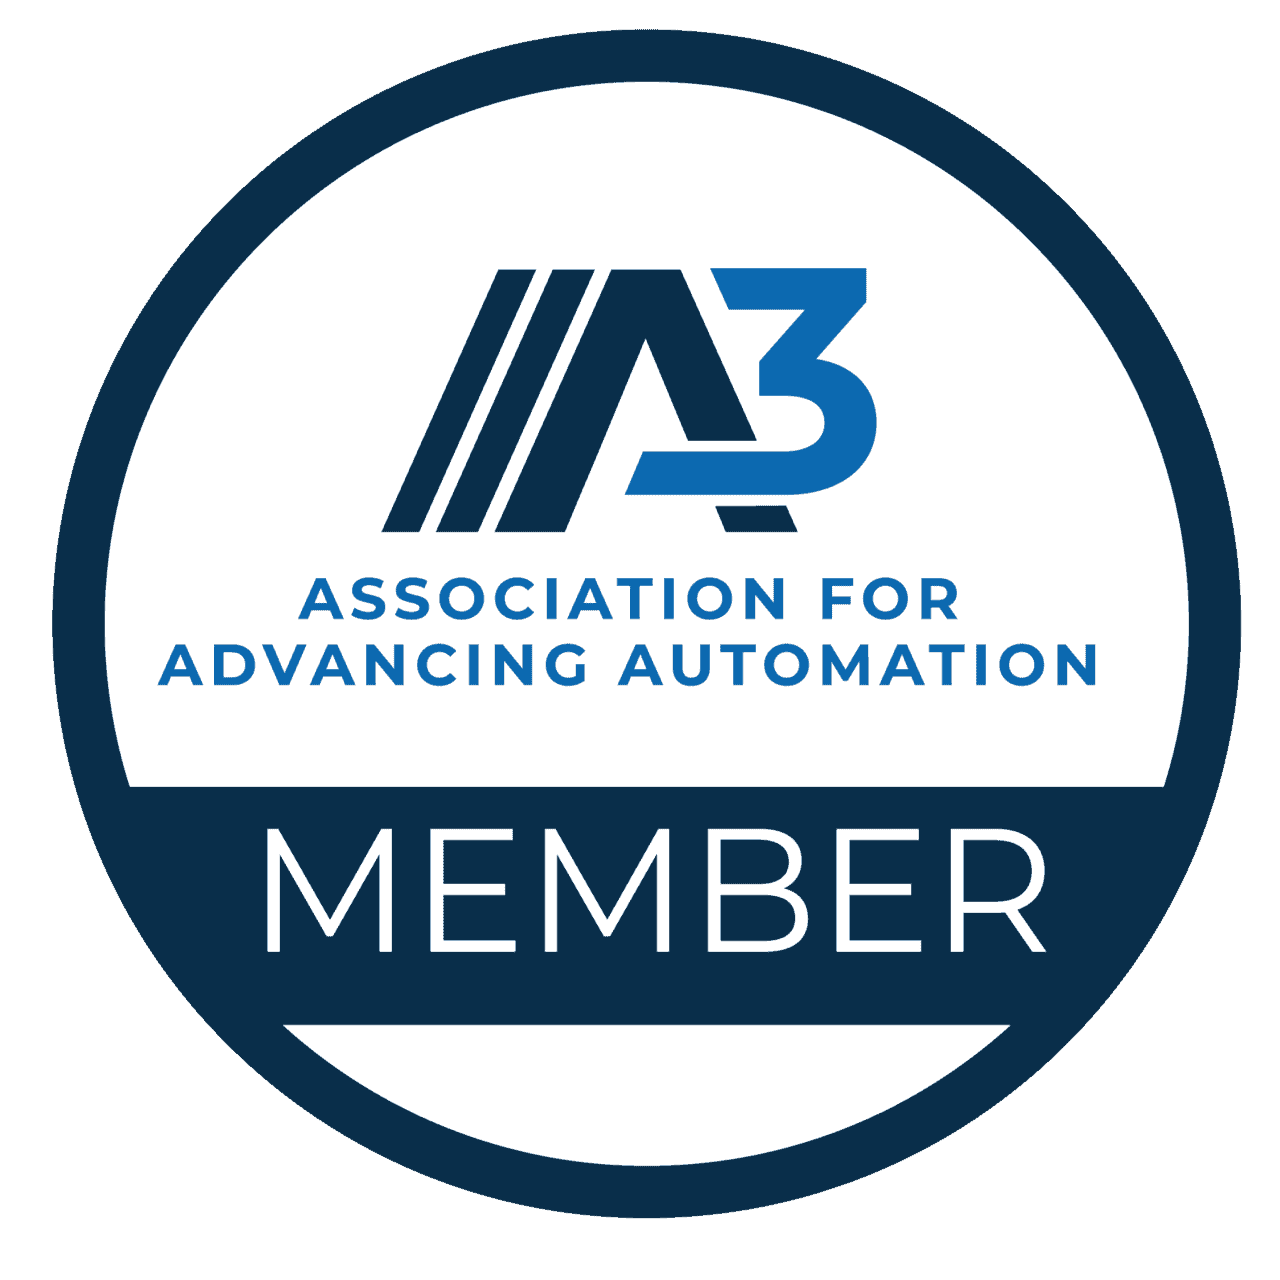 Sello de miembro de A3 (Association for Advancing Automation)